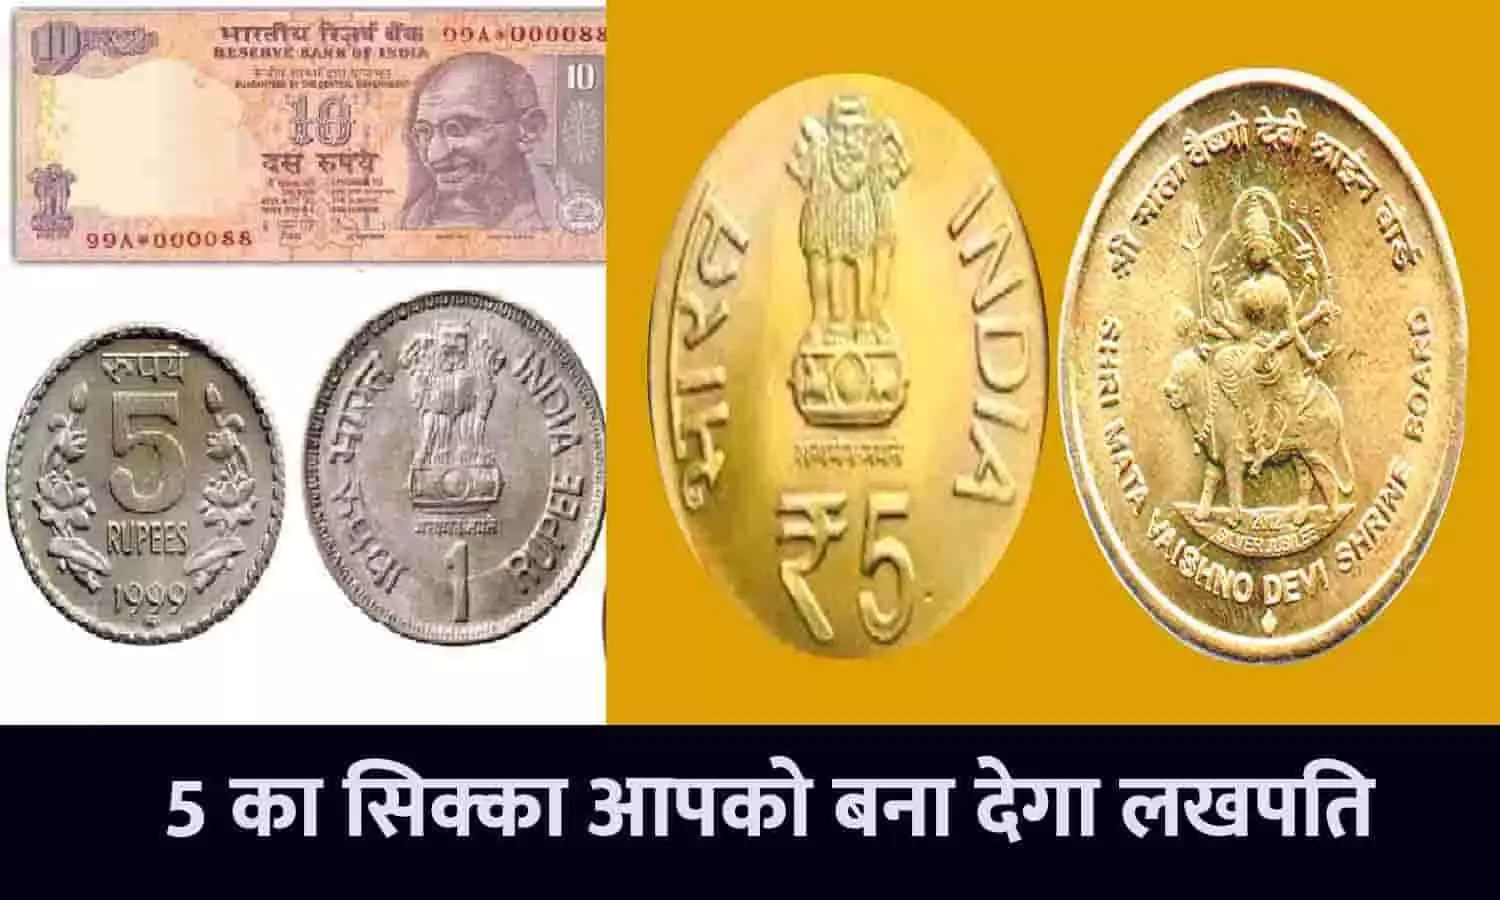 Sell Old Notes and Coin 2023: होली के पहले दुर्गा जी और शेर की फोटो वाला ये सिक्का बना देगा रोडपति से करोड़पति, फटाफट इस Online Website में बेचे